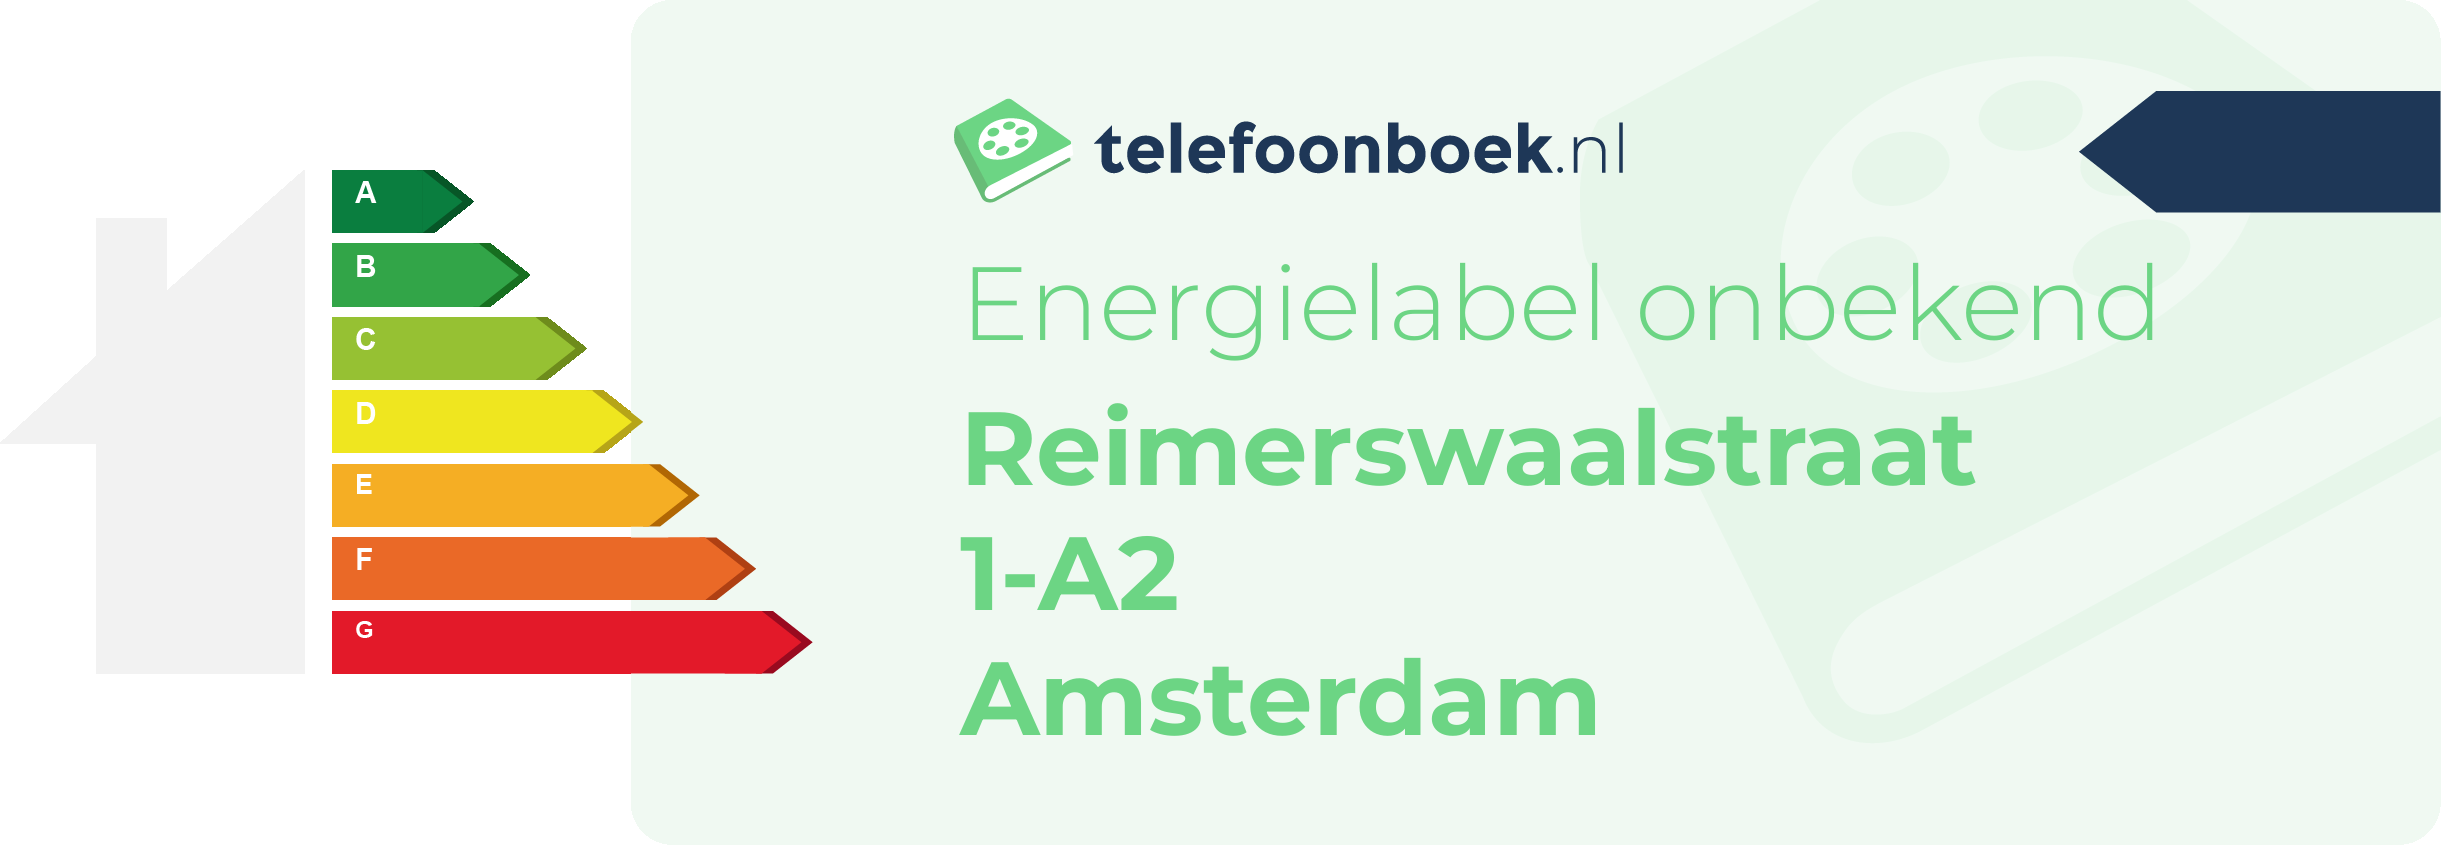 Energielabel Reimerswaalstraat 1-A2 Amsterdam